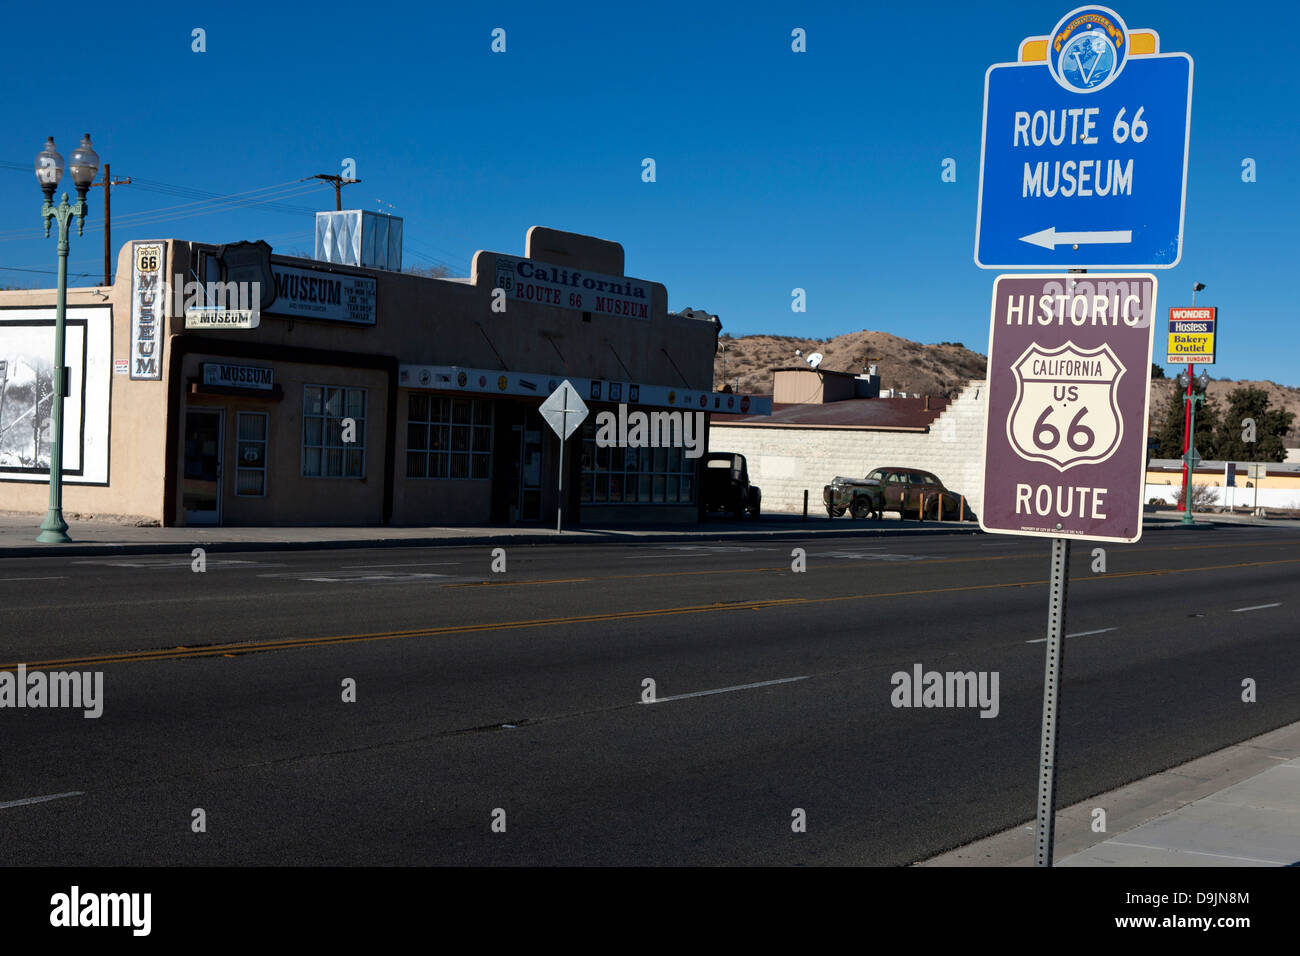 La storica Route 66 segno opposto della Route 66 Museum, Victorville, California, Stati Uniti d'America Foto Stock